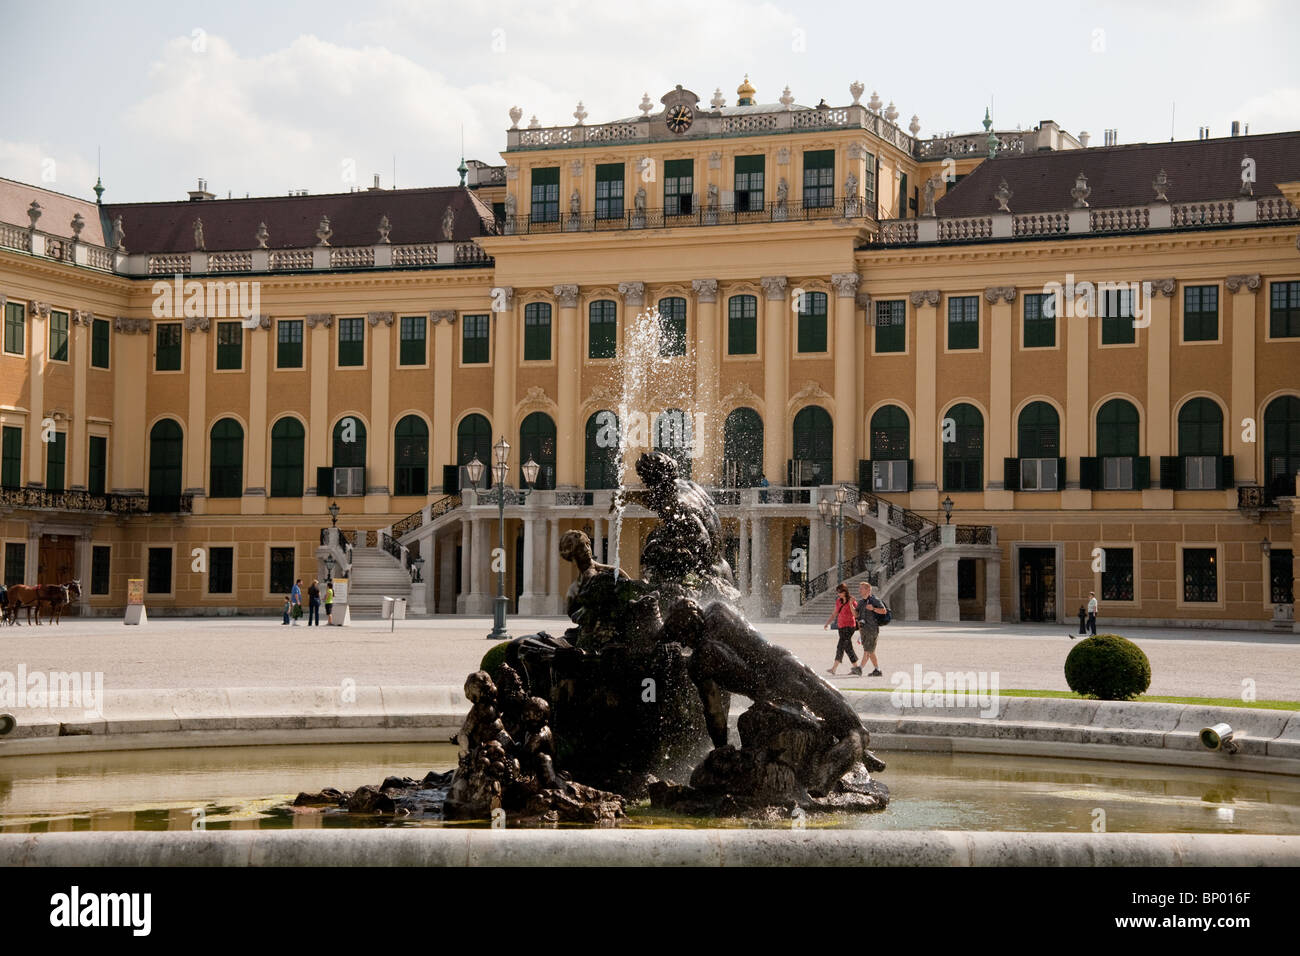 The main facade of Schoenbrunn Palace Stock Photo